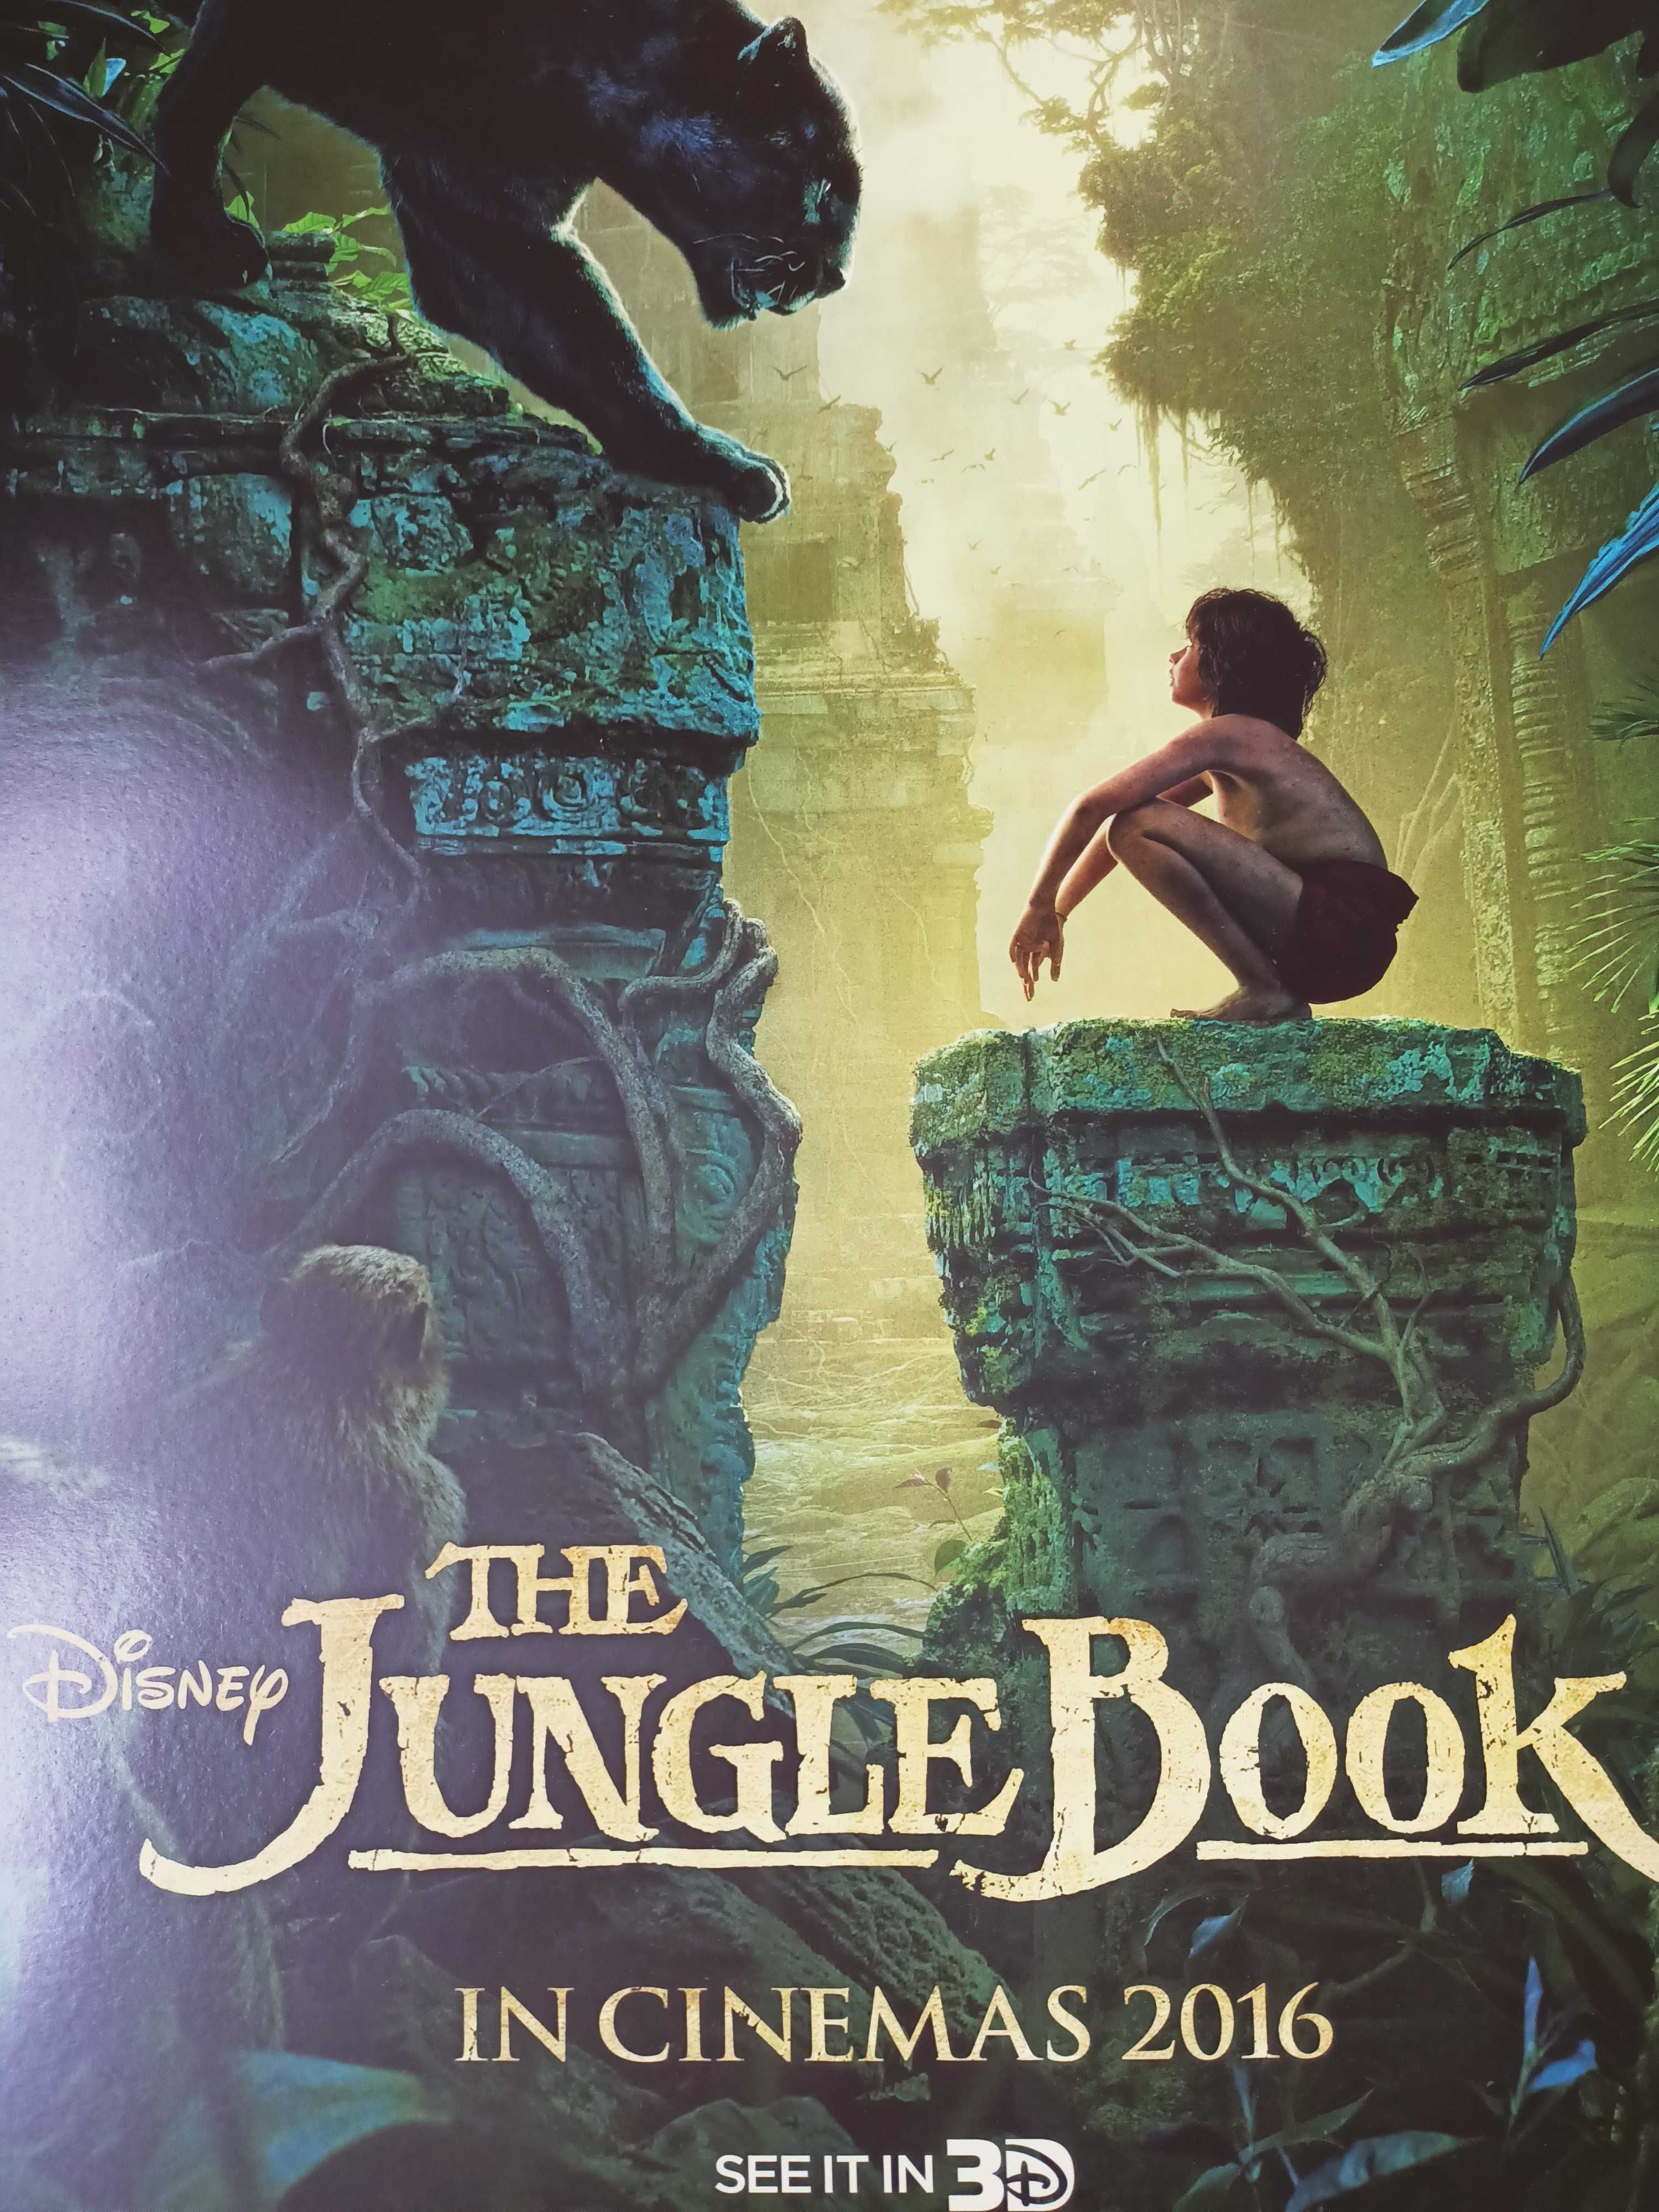 Afis film original cinema The Jungle Book 2016 Disney Mowgli